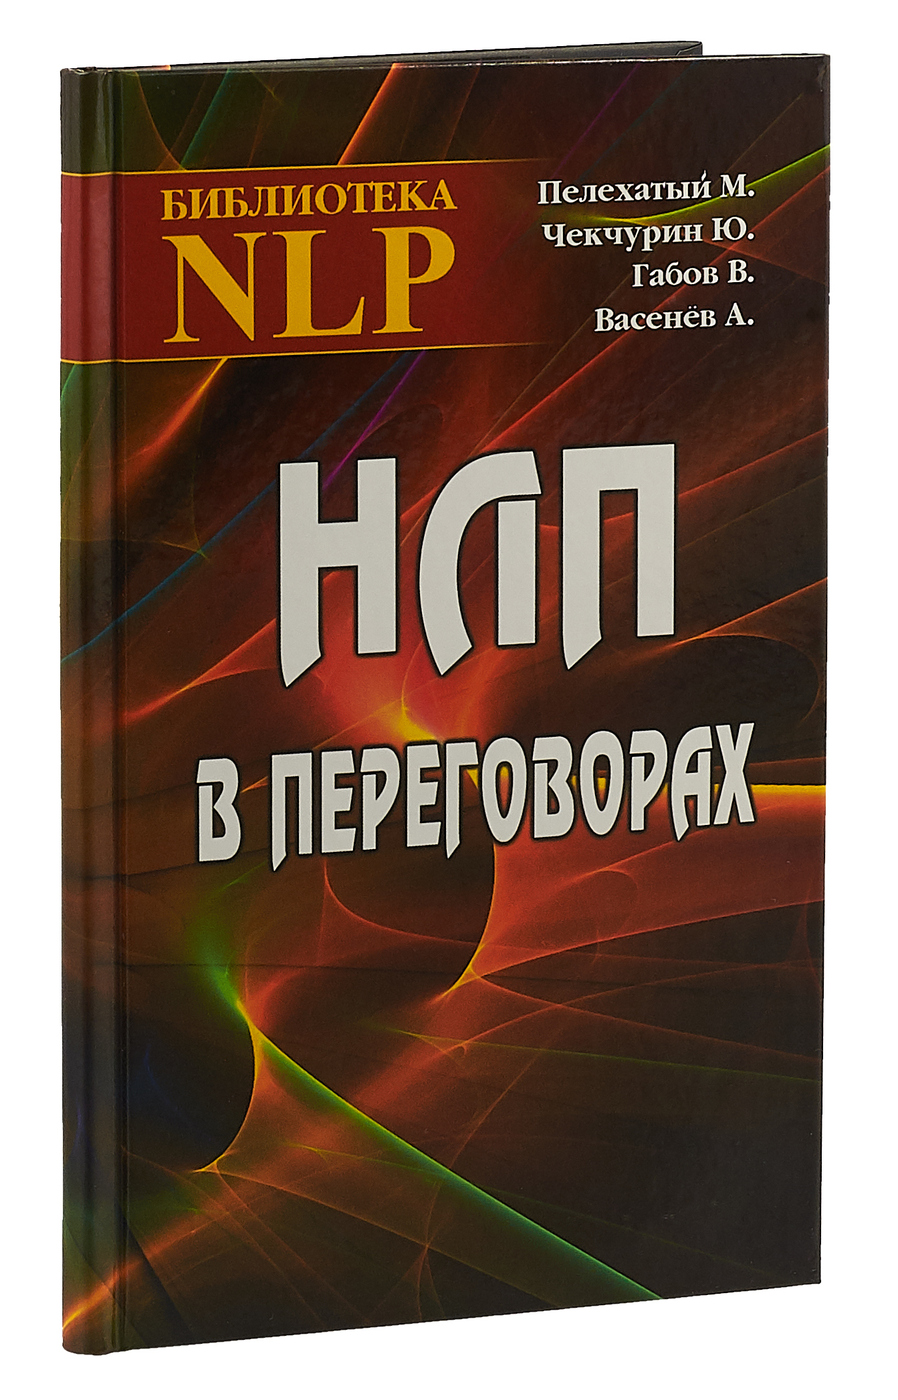 Книга про переговоры. НЛП книга. НЛП переговоры. Нейролингвистическое программирование книга.